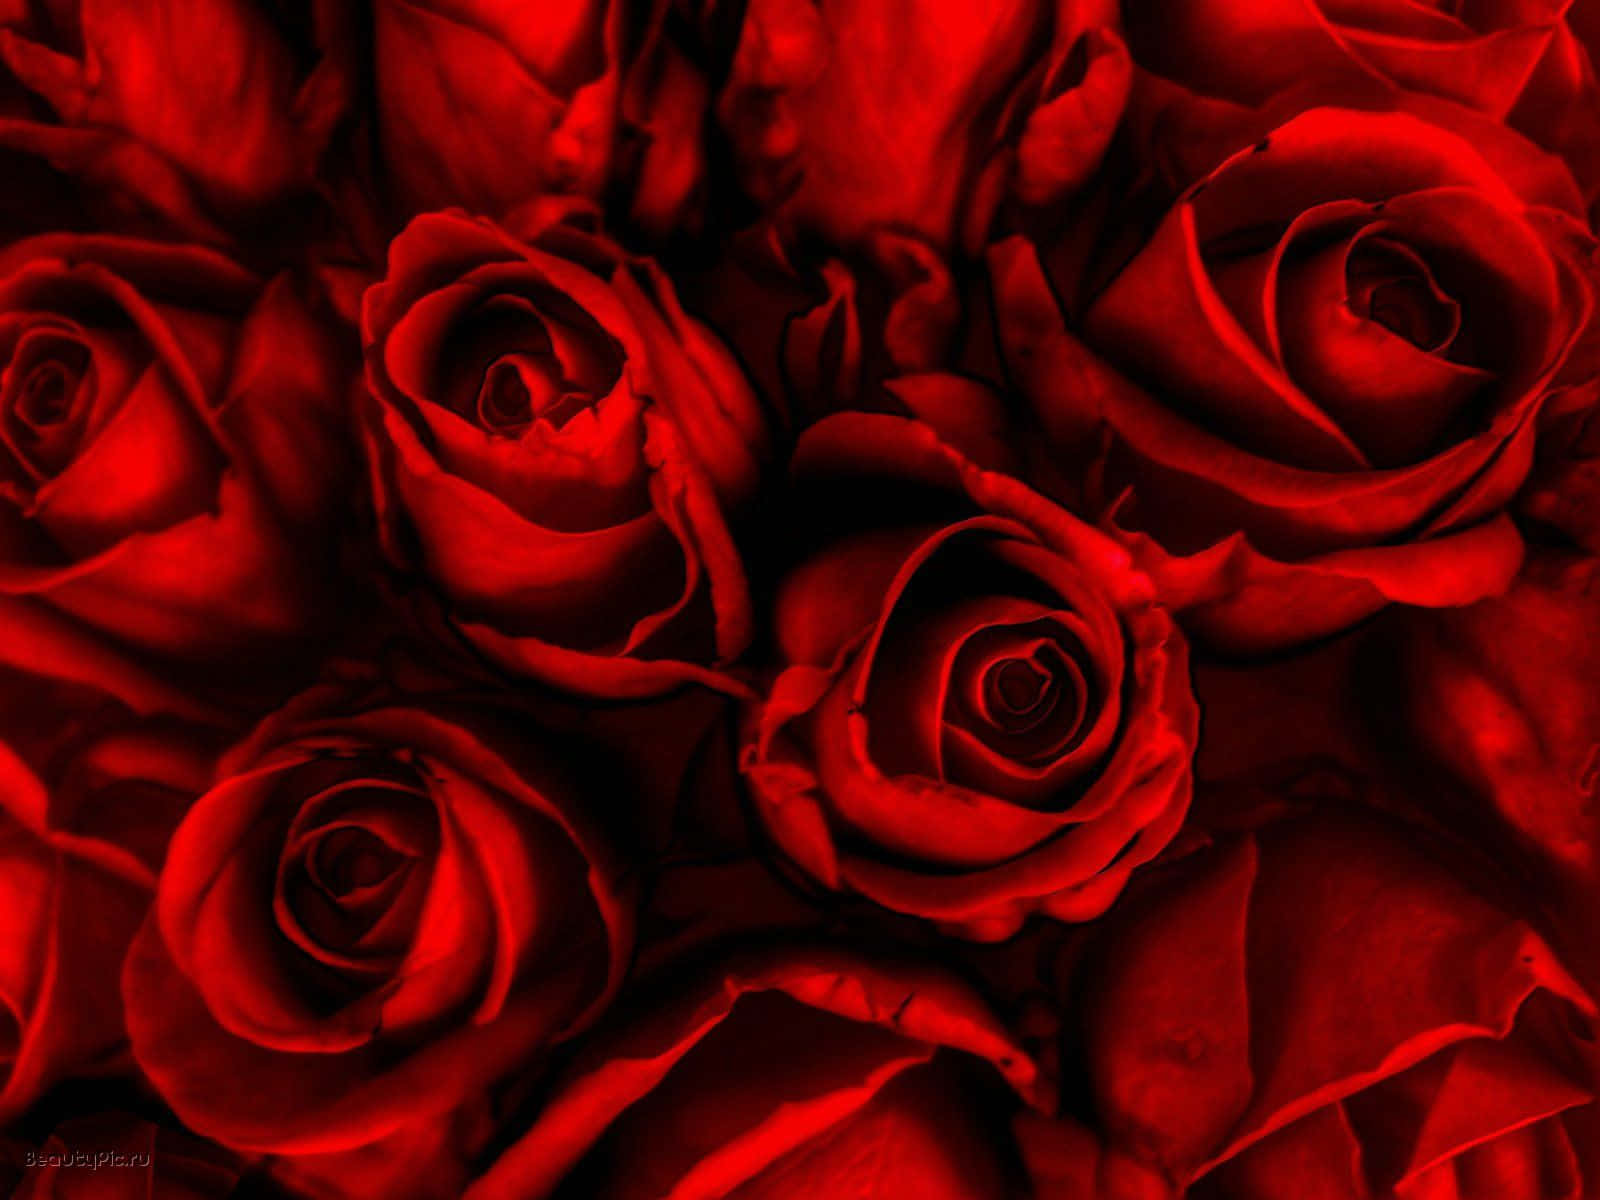 Envacker Röd Ros Mot En Suddig Bakgrund, Symboliserar Kärlek Och Skönhet.